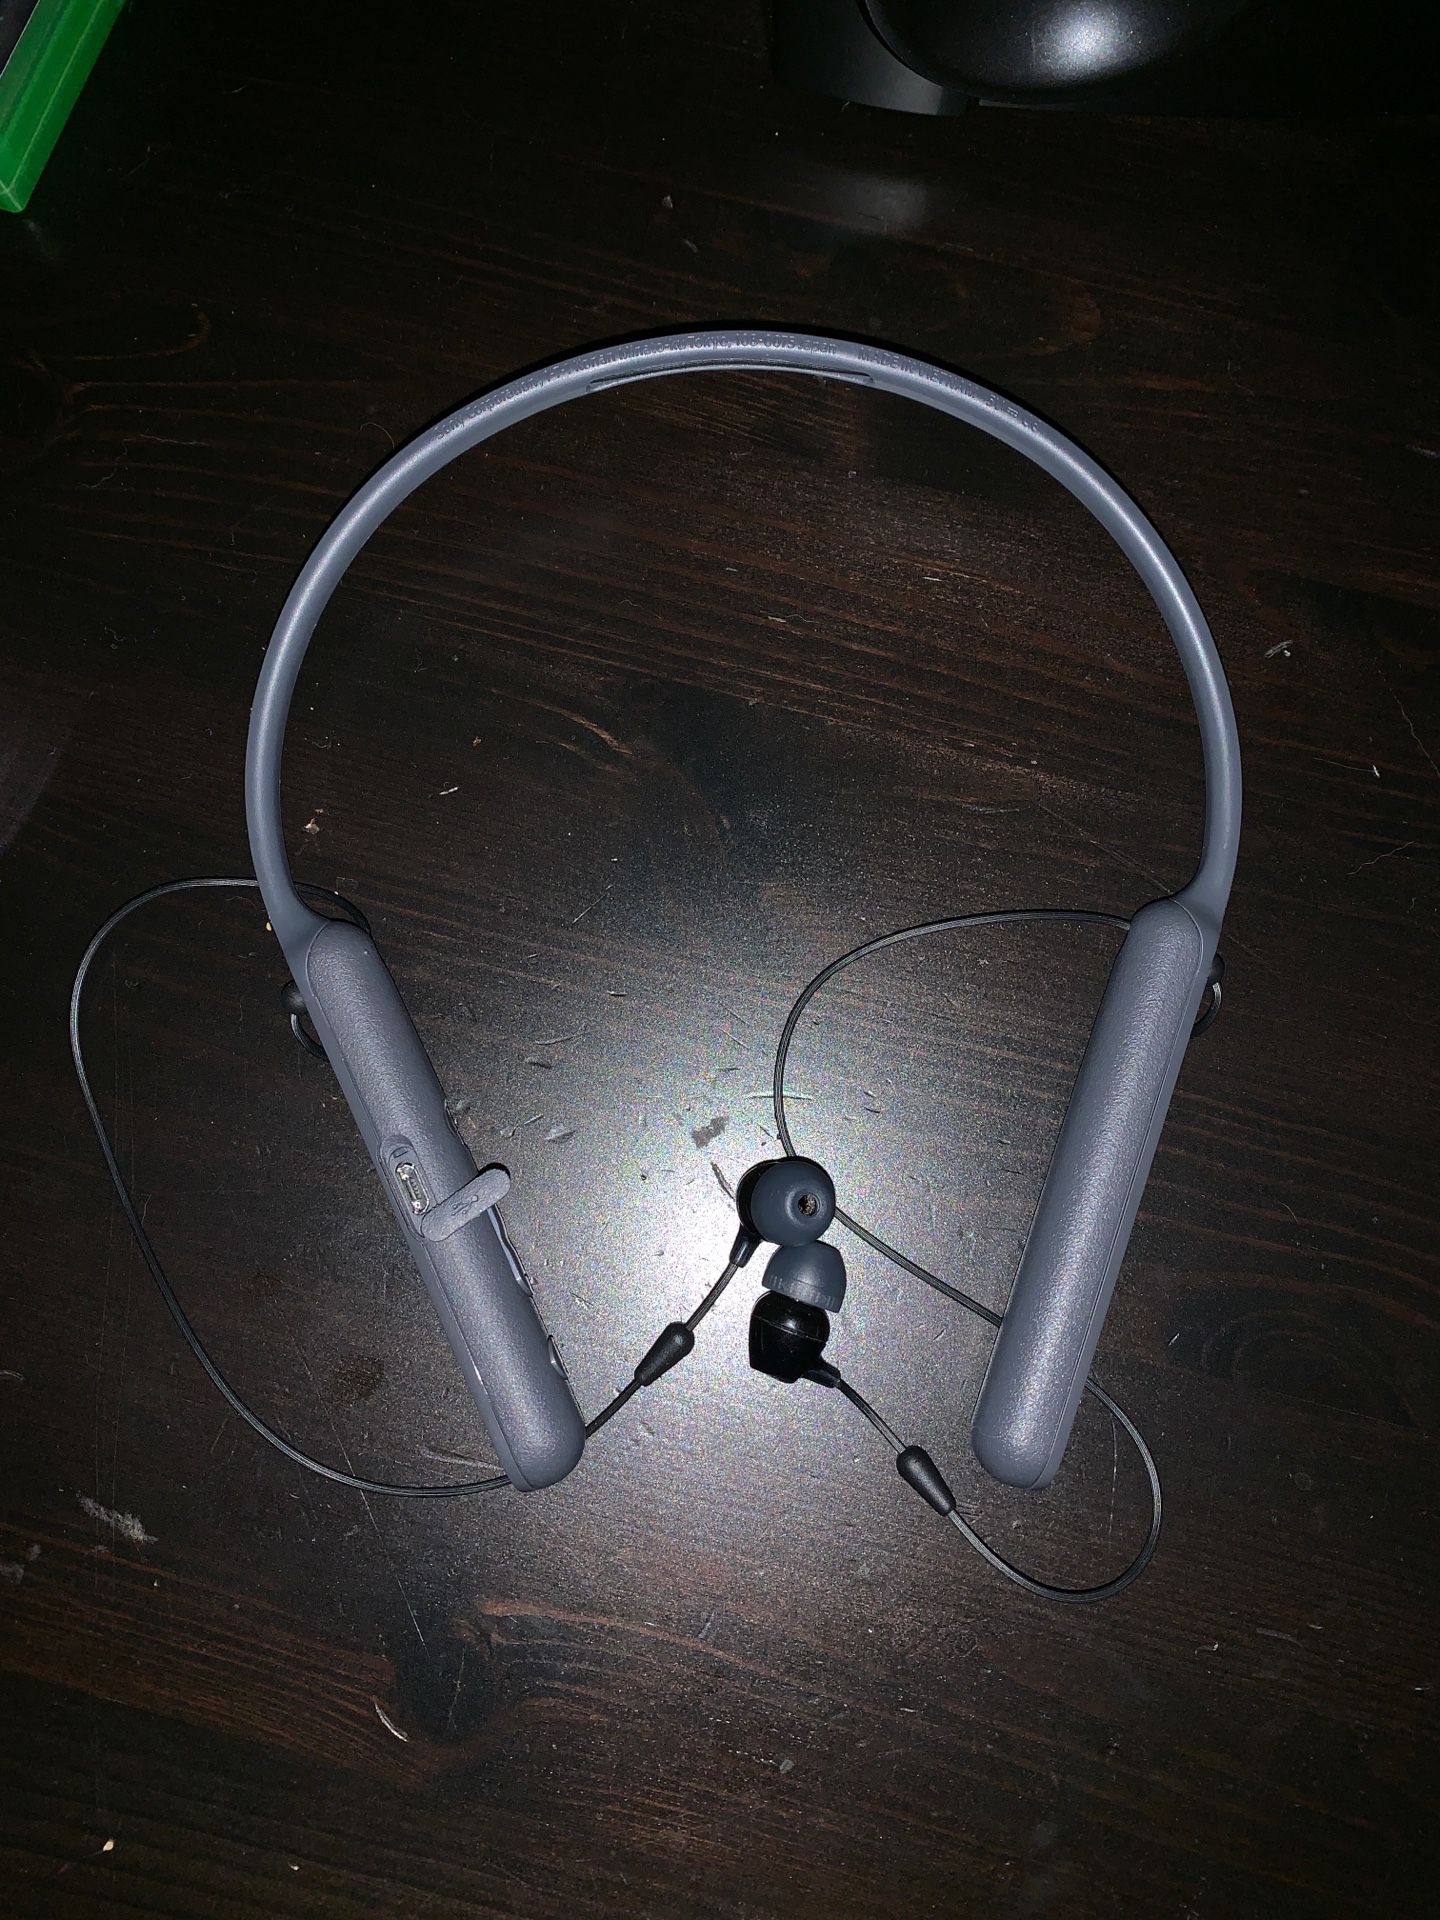 Sony-c-400 Bluetooth headphones